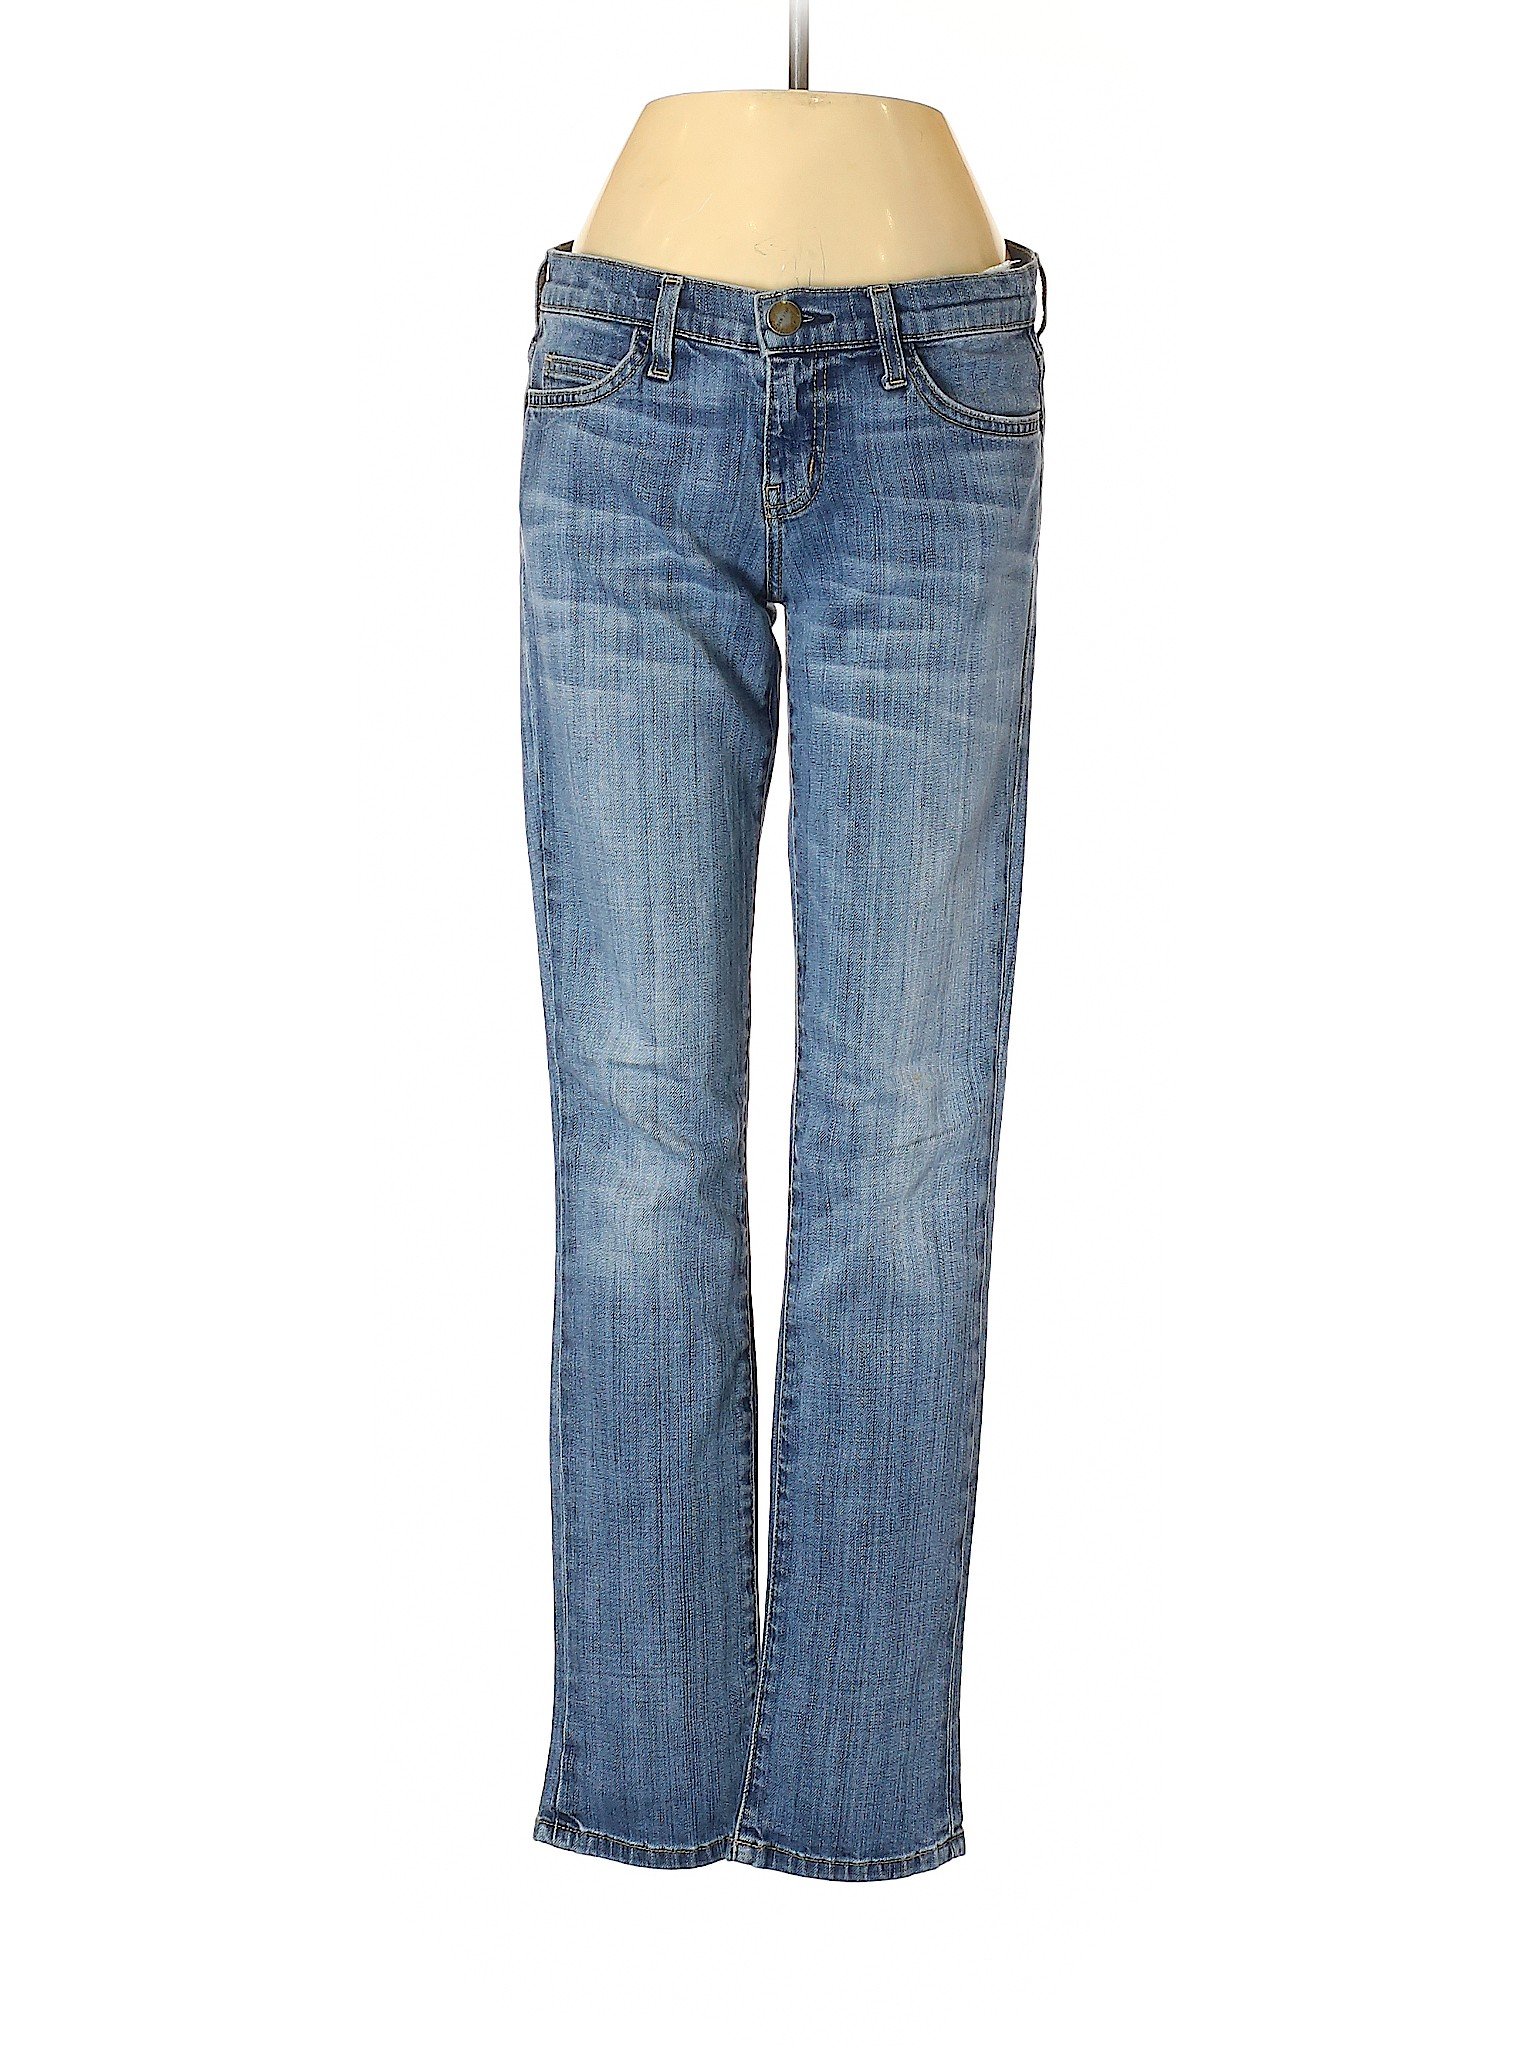 Current/Elliott Women Blue Jeans XS | eBay